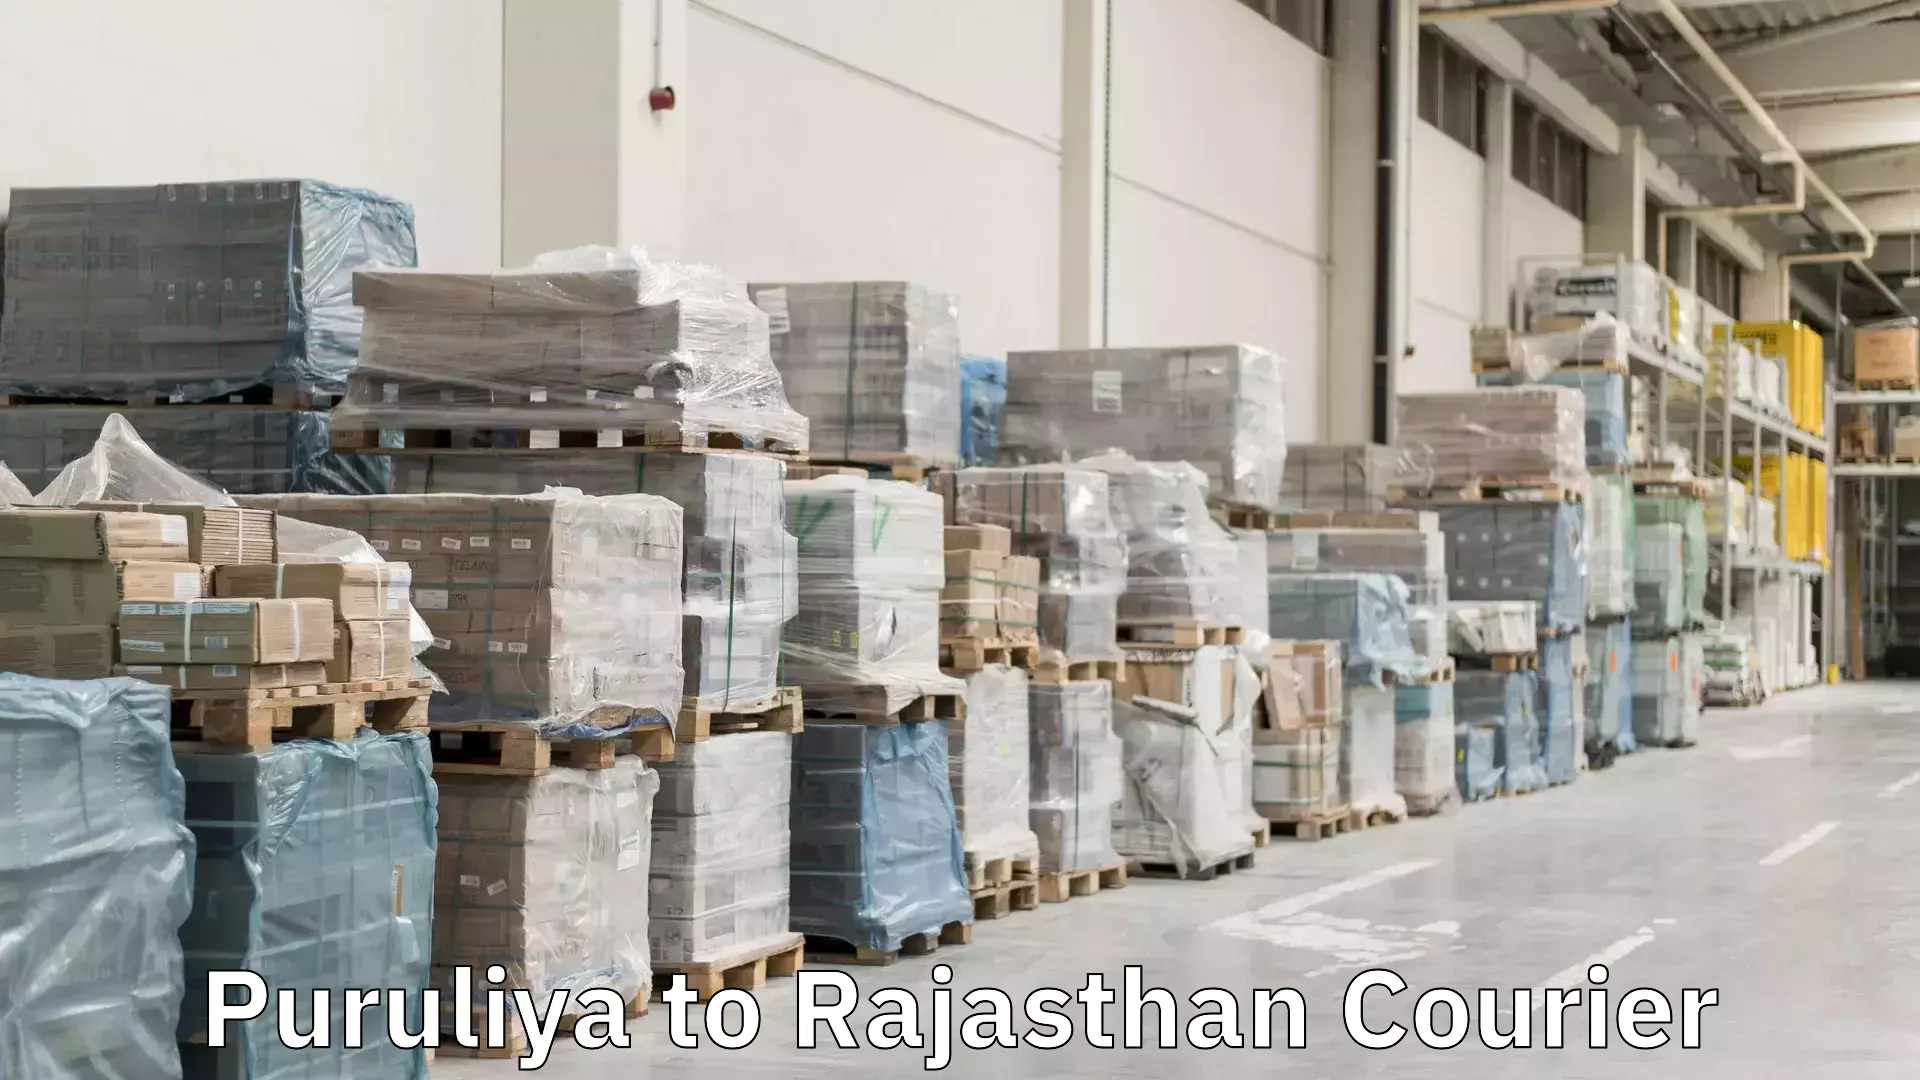 Global logistics network Puruliya to Rajasthan